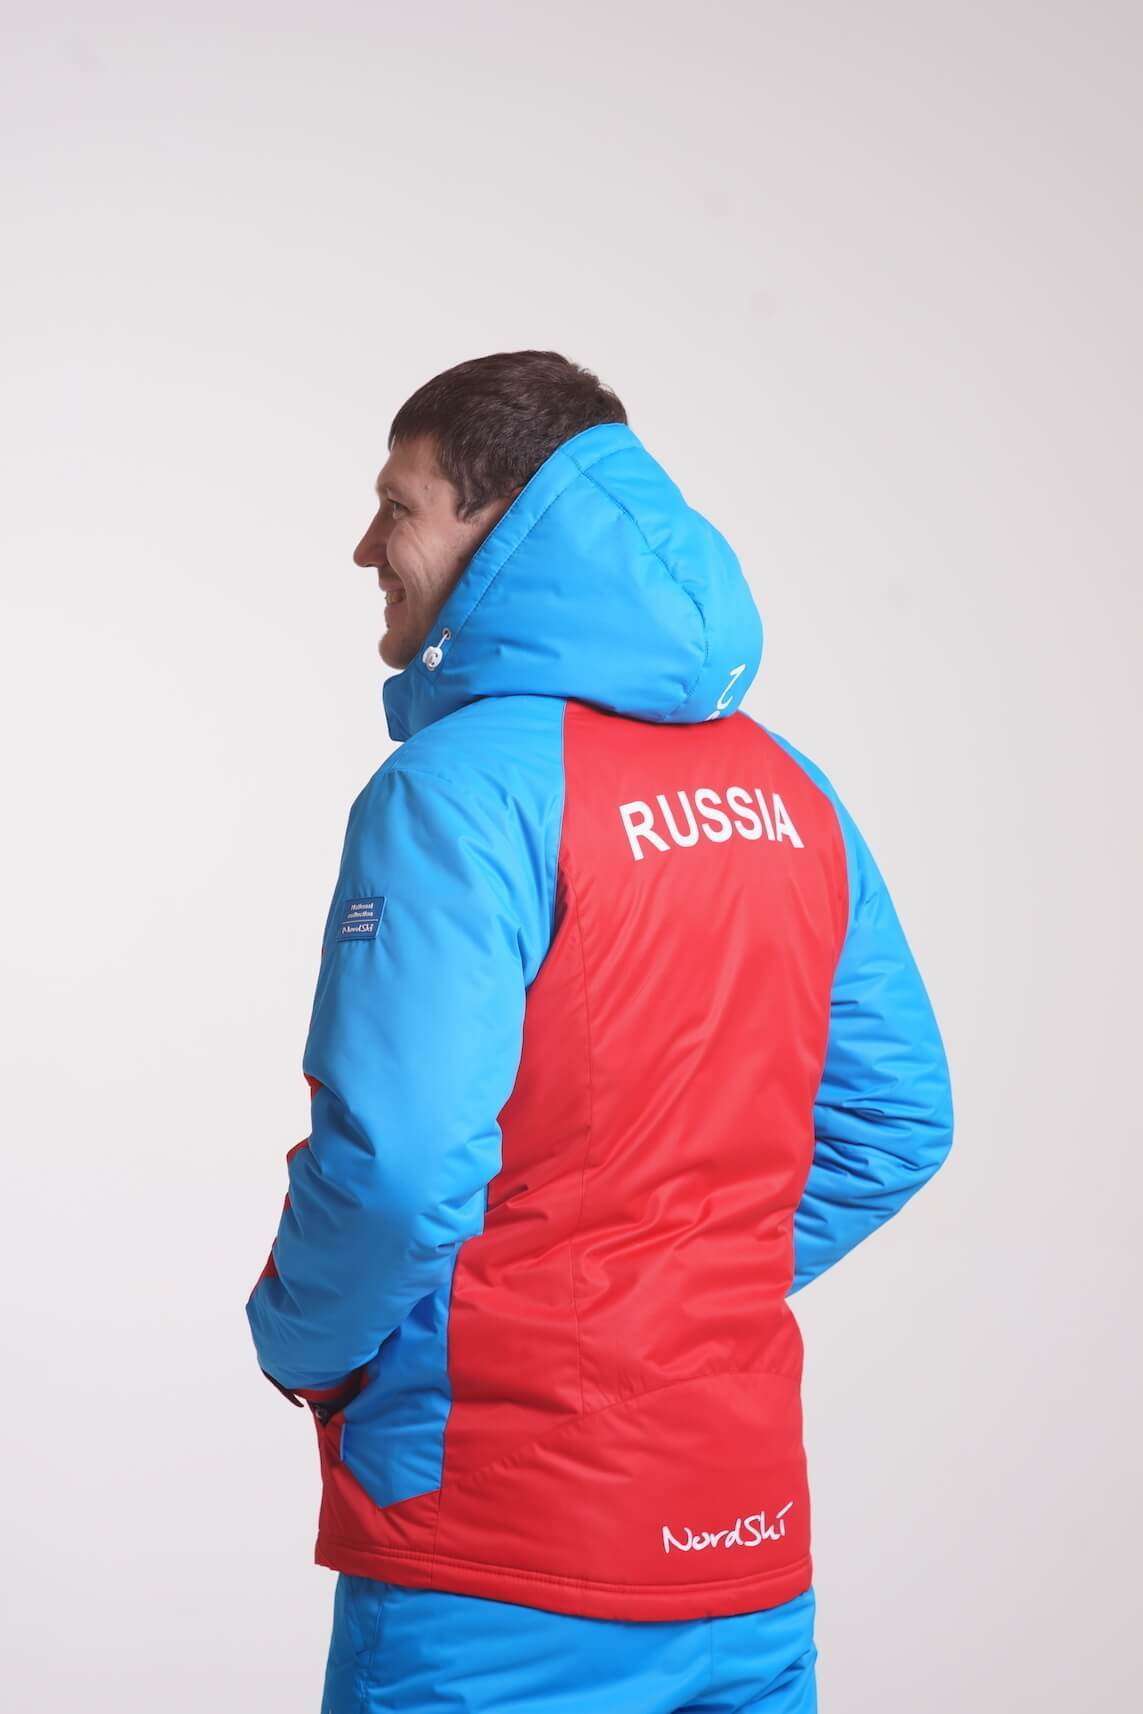 Nordski Россия мужской прогулочный лыжный костюм